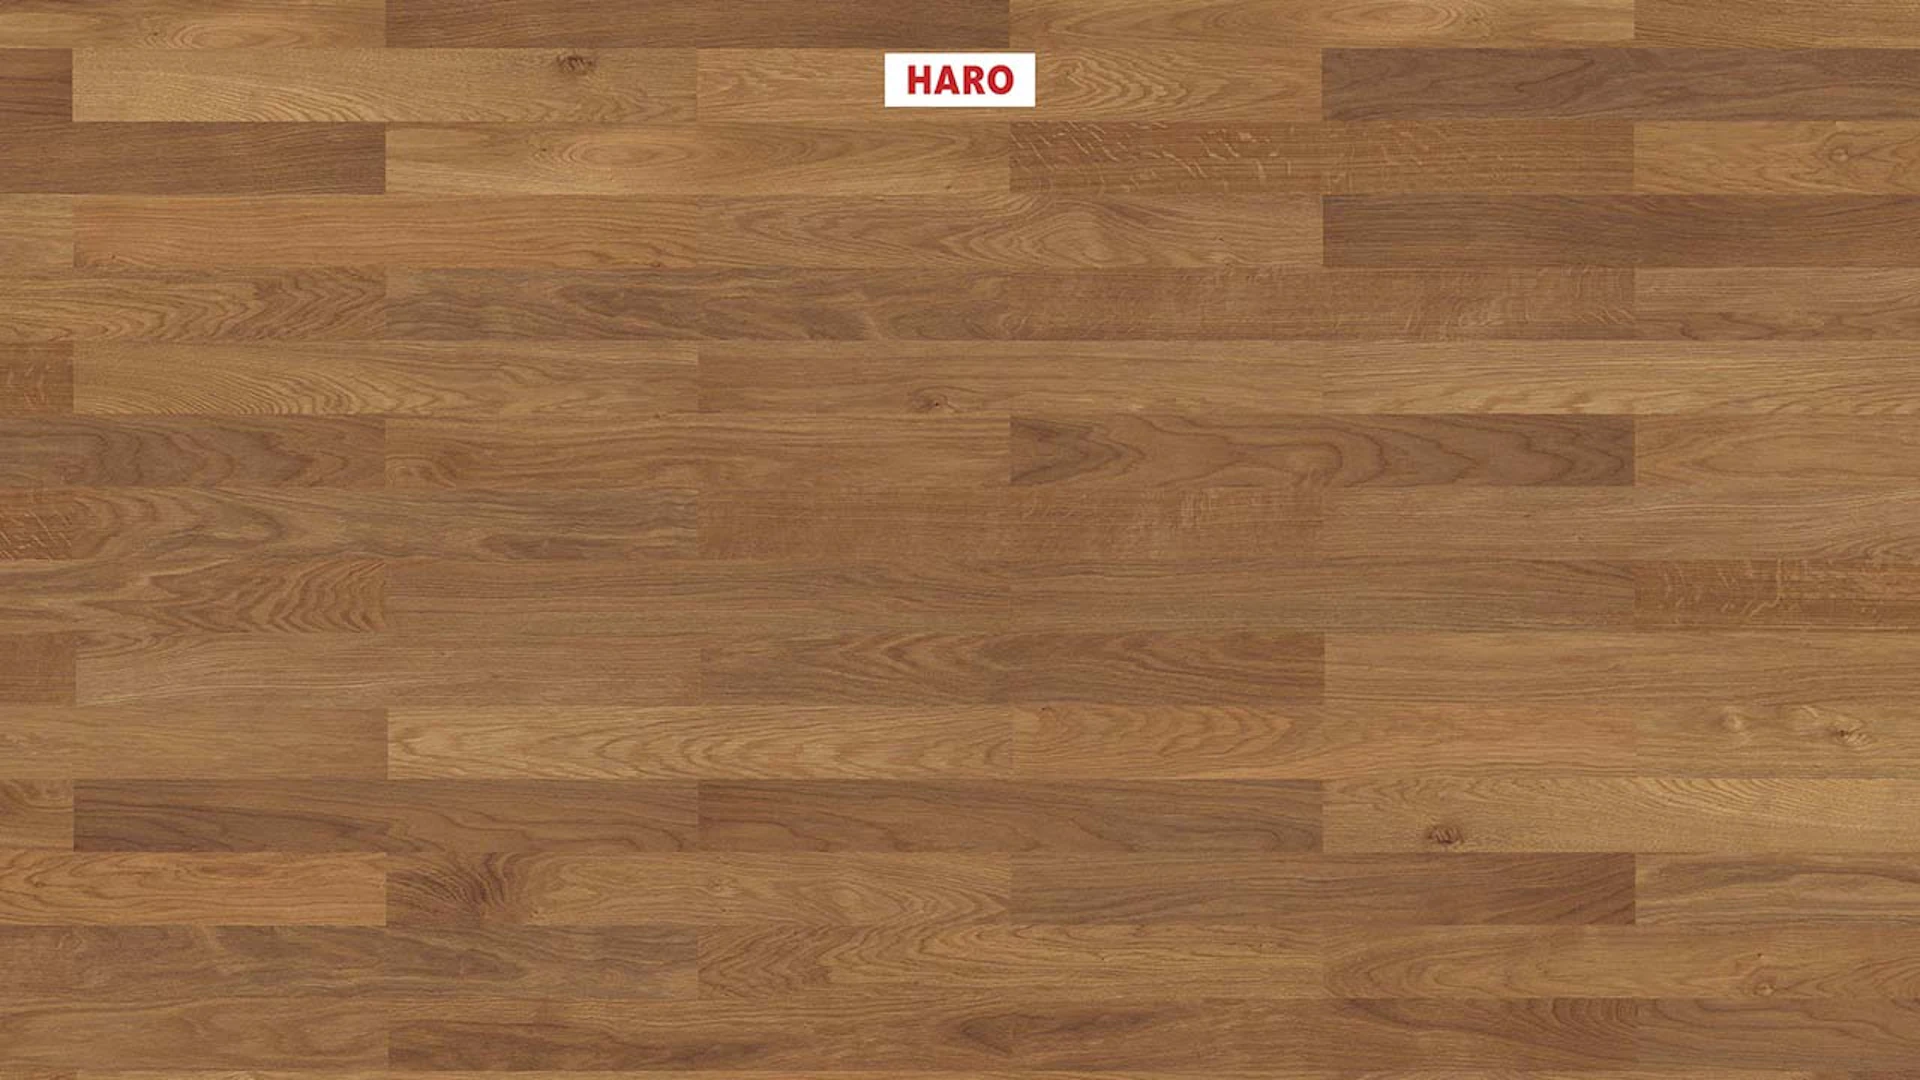 Haro Parquet Flooring - Series 4000 NF Stab Classico naturaLin plus Amber Oak Trend (543556)